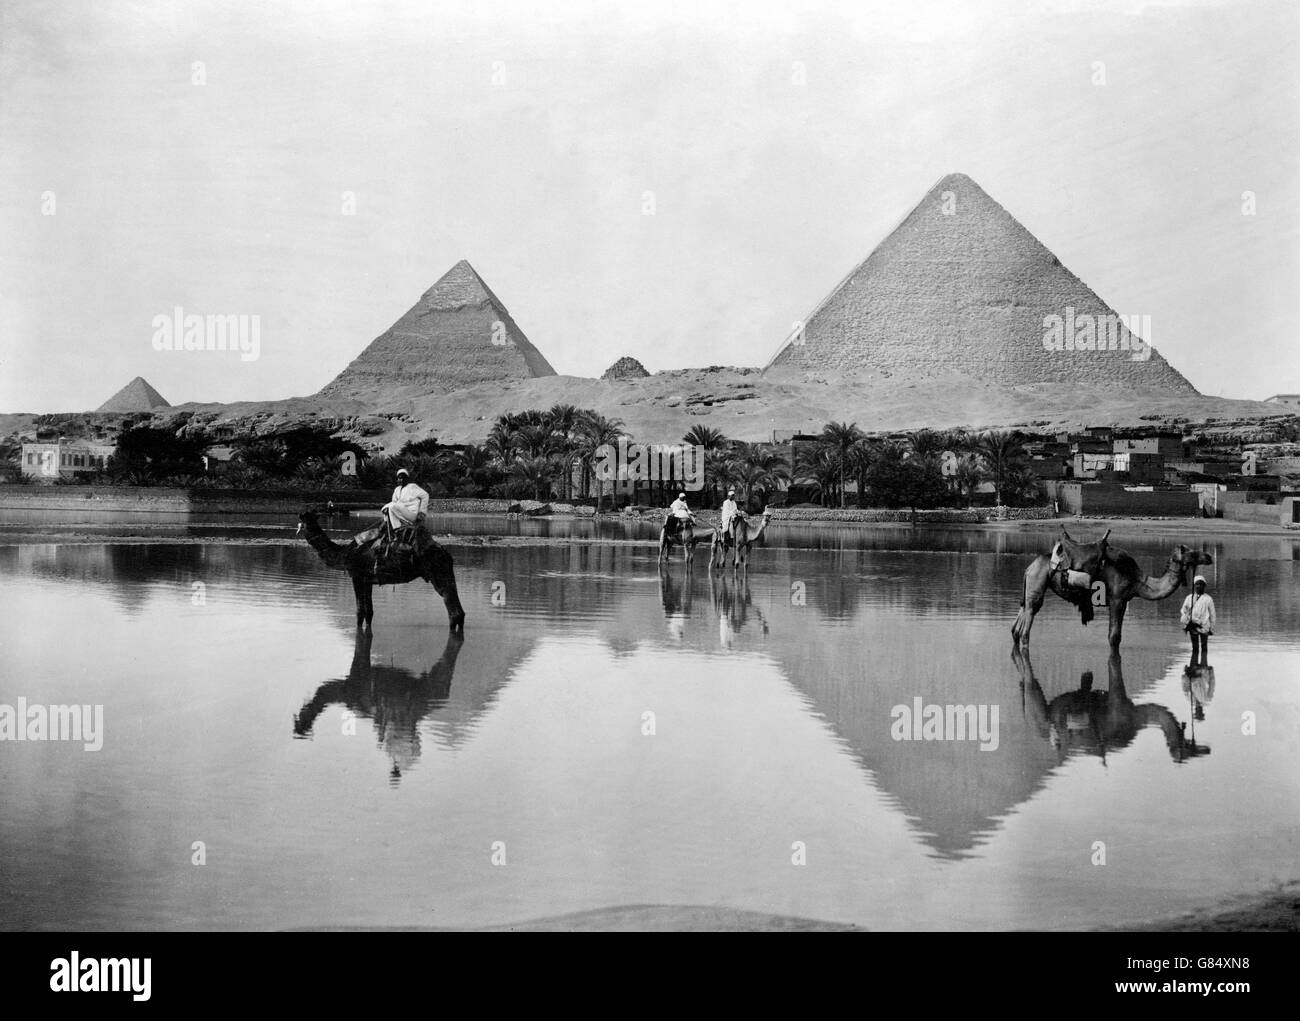 Die Pyramiden von Gizeh im späten 19. Jahrhundert während der Sintflut. Foto zwischen 1890 und 1900 von Frank G Carpenter. Stockfoto